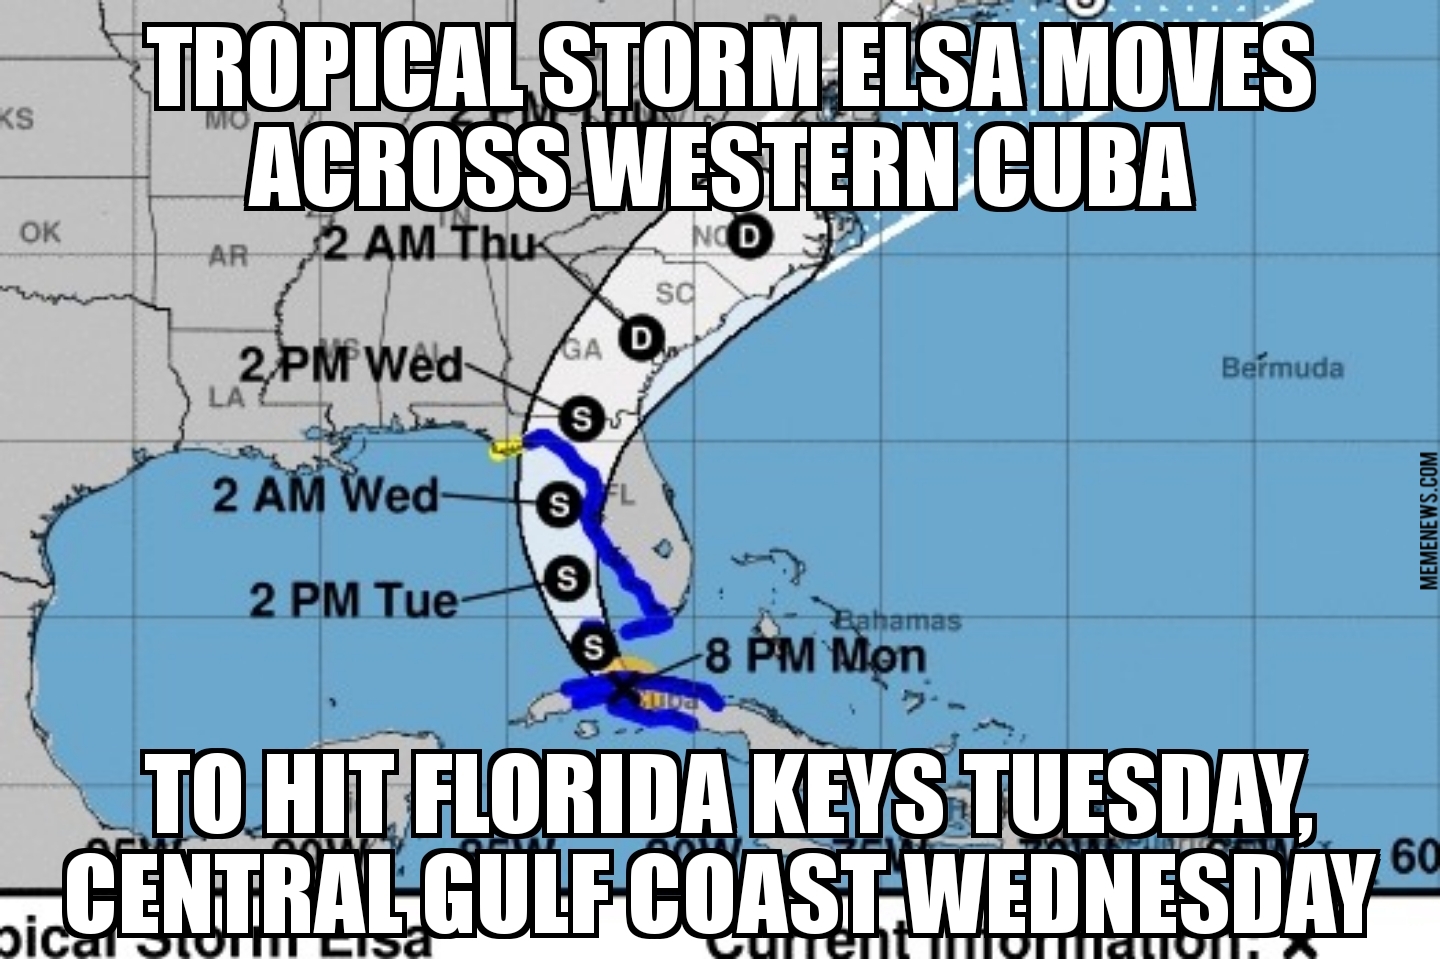 Tropical Storm Elsa hits Cuba